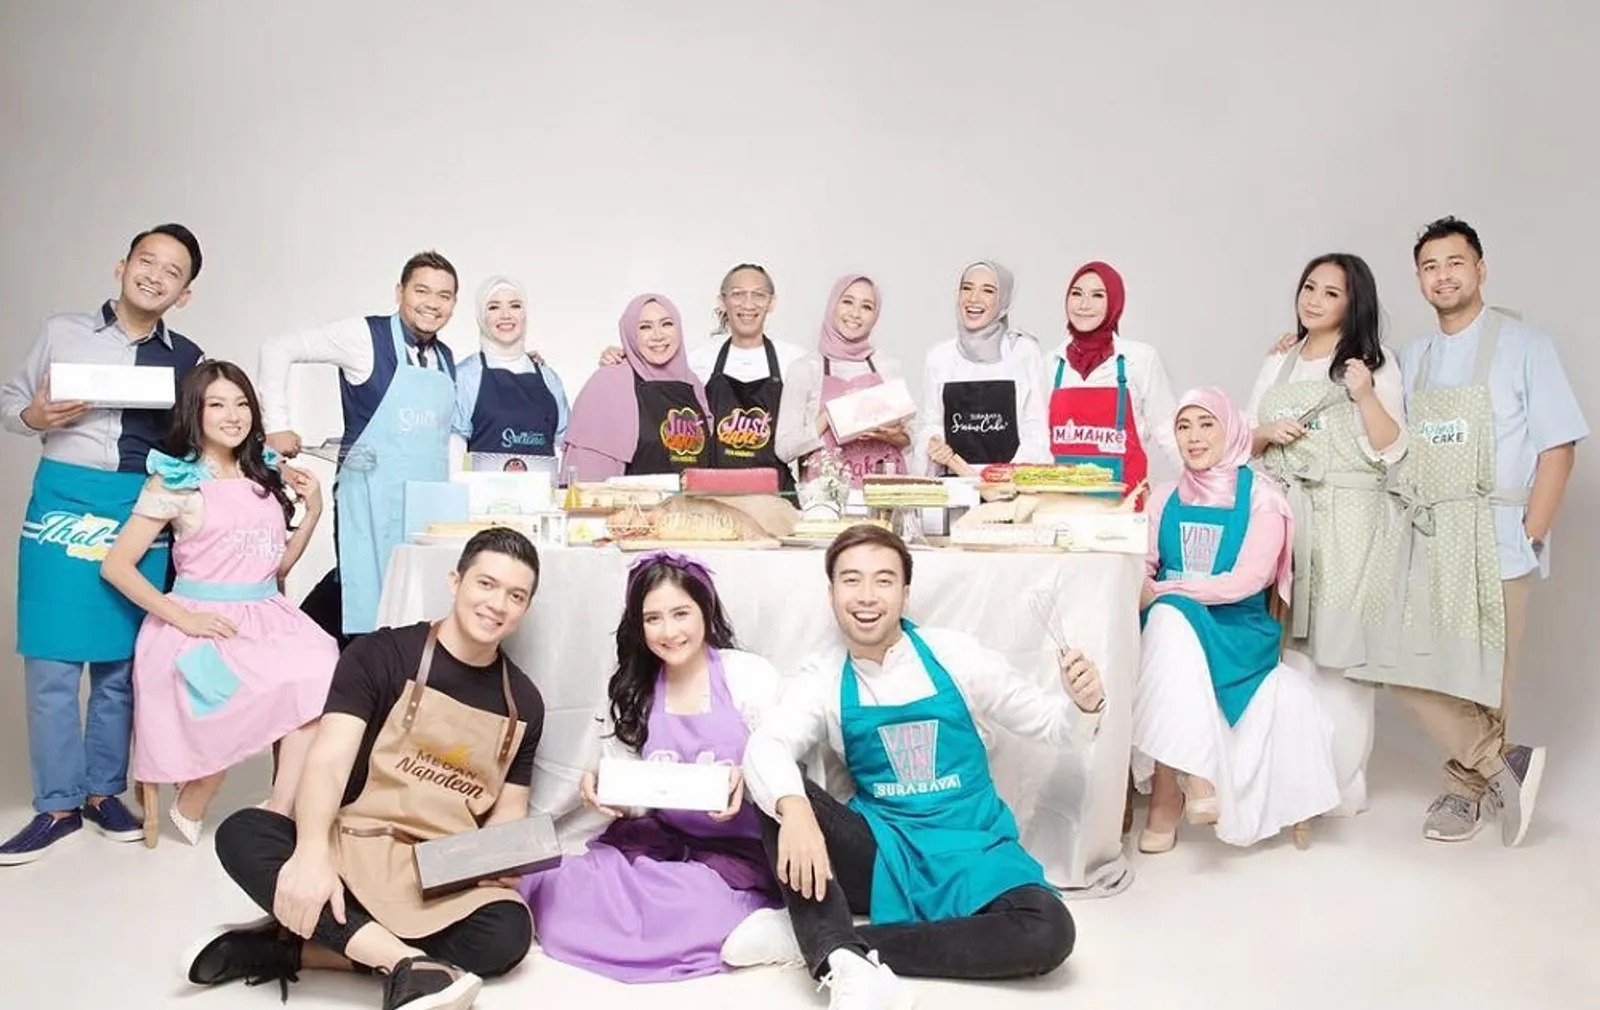 Percaya Nggak? Karena Inilah Kenapa Artis Indonesia Suka Membuka Bisnis Kuliner